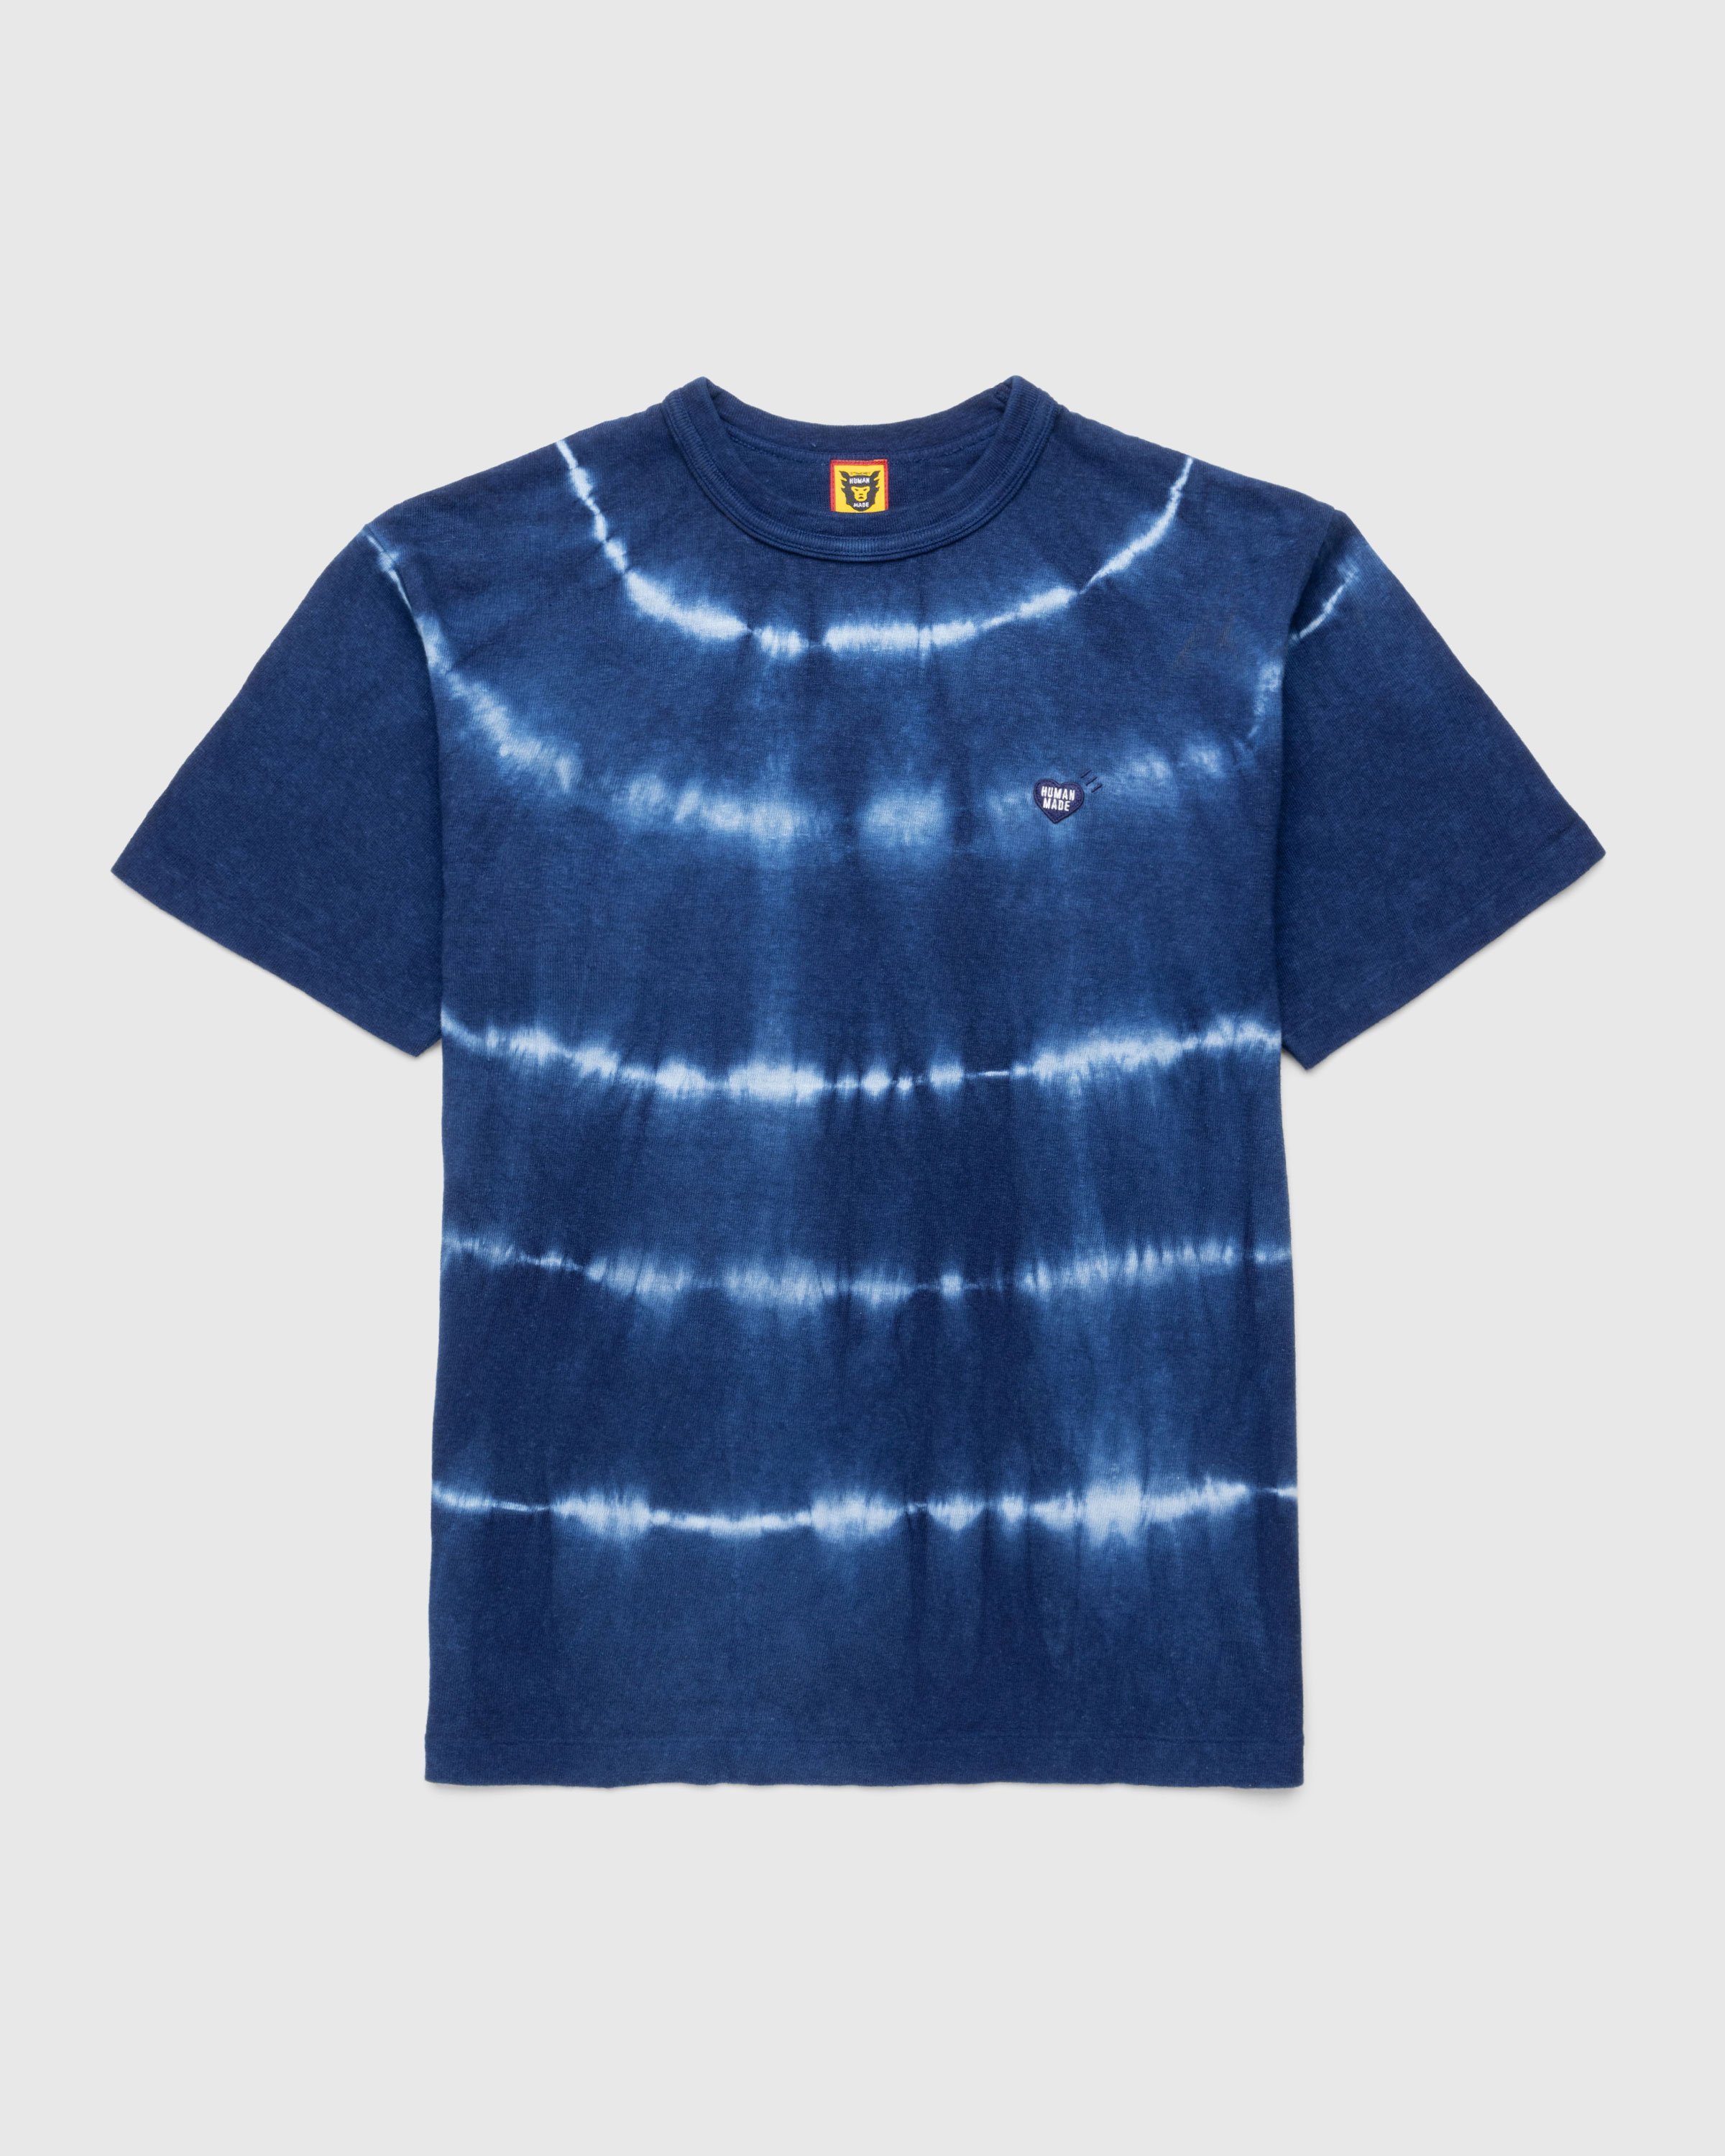 Human Made - Ningen-sei Indigo Dyed T-Shirt #1 Blue - Clothing - Blue - Image 1